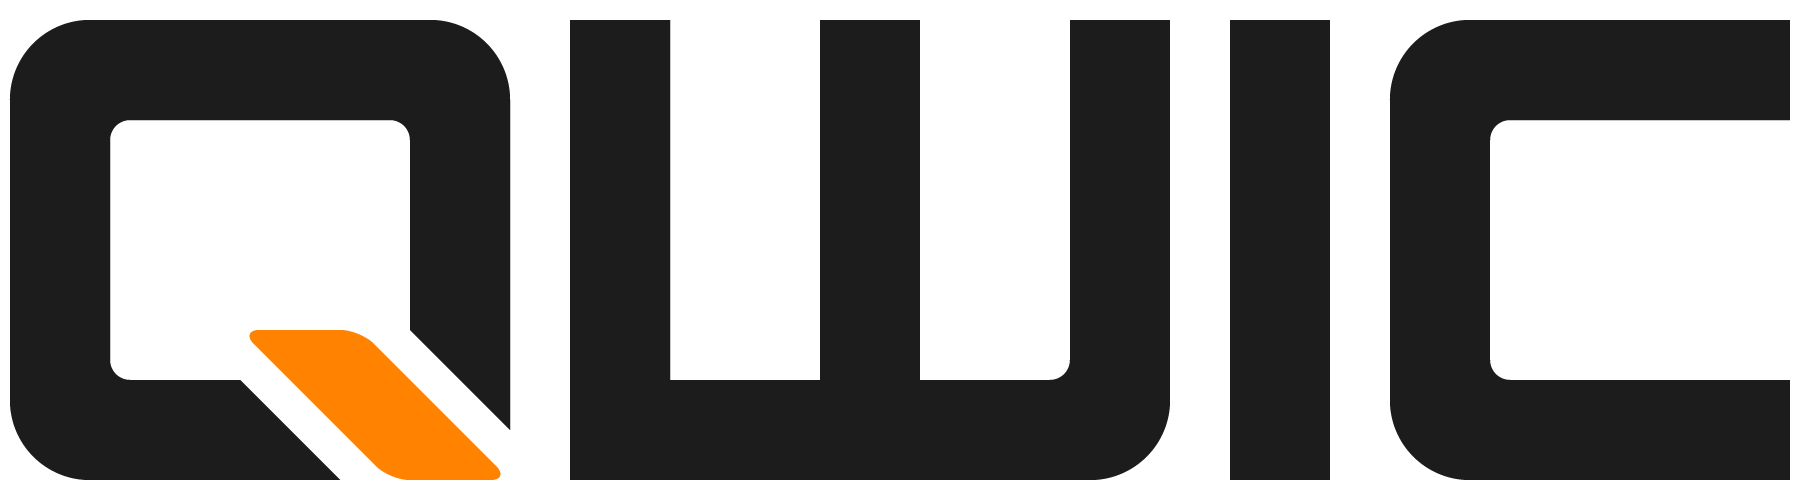 Qwic logo